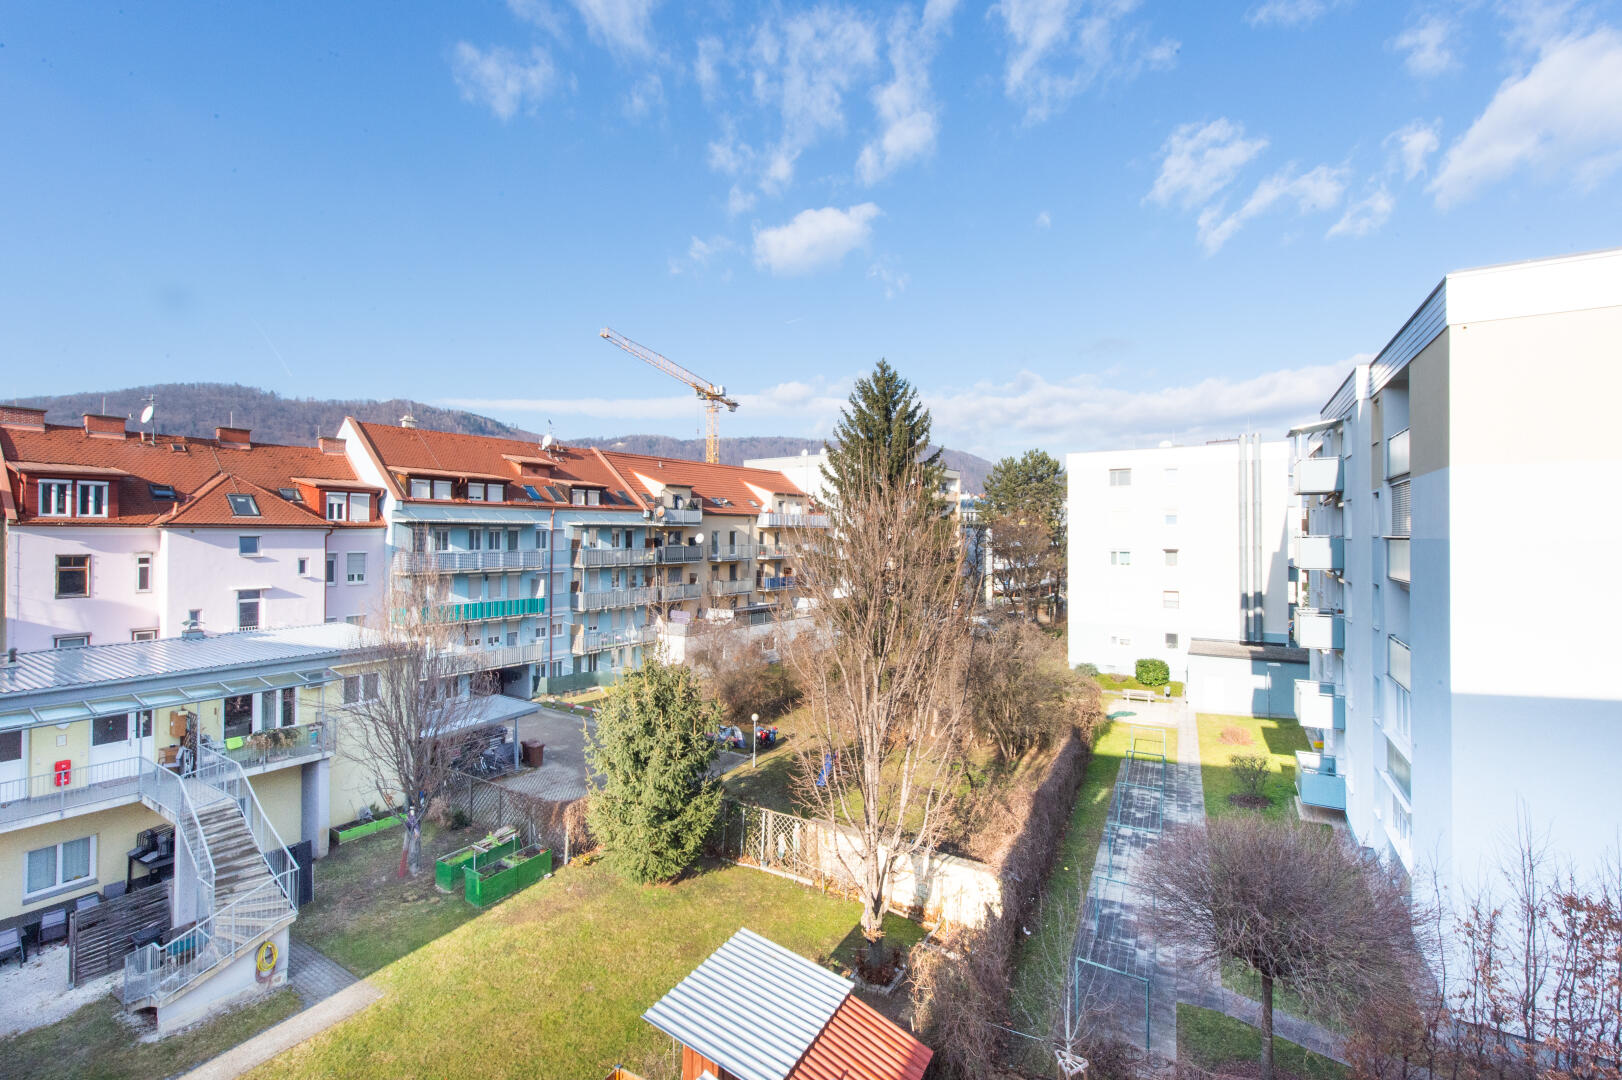 Wohnung zu mieten: Reininghausstraße 56, 8020 Graz - Mietwohnung Reininghausstraße Top 29-16